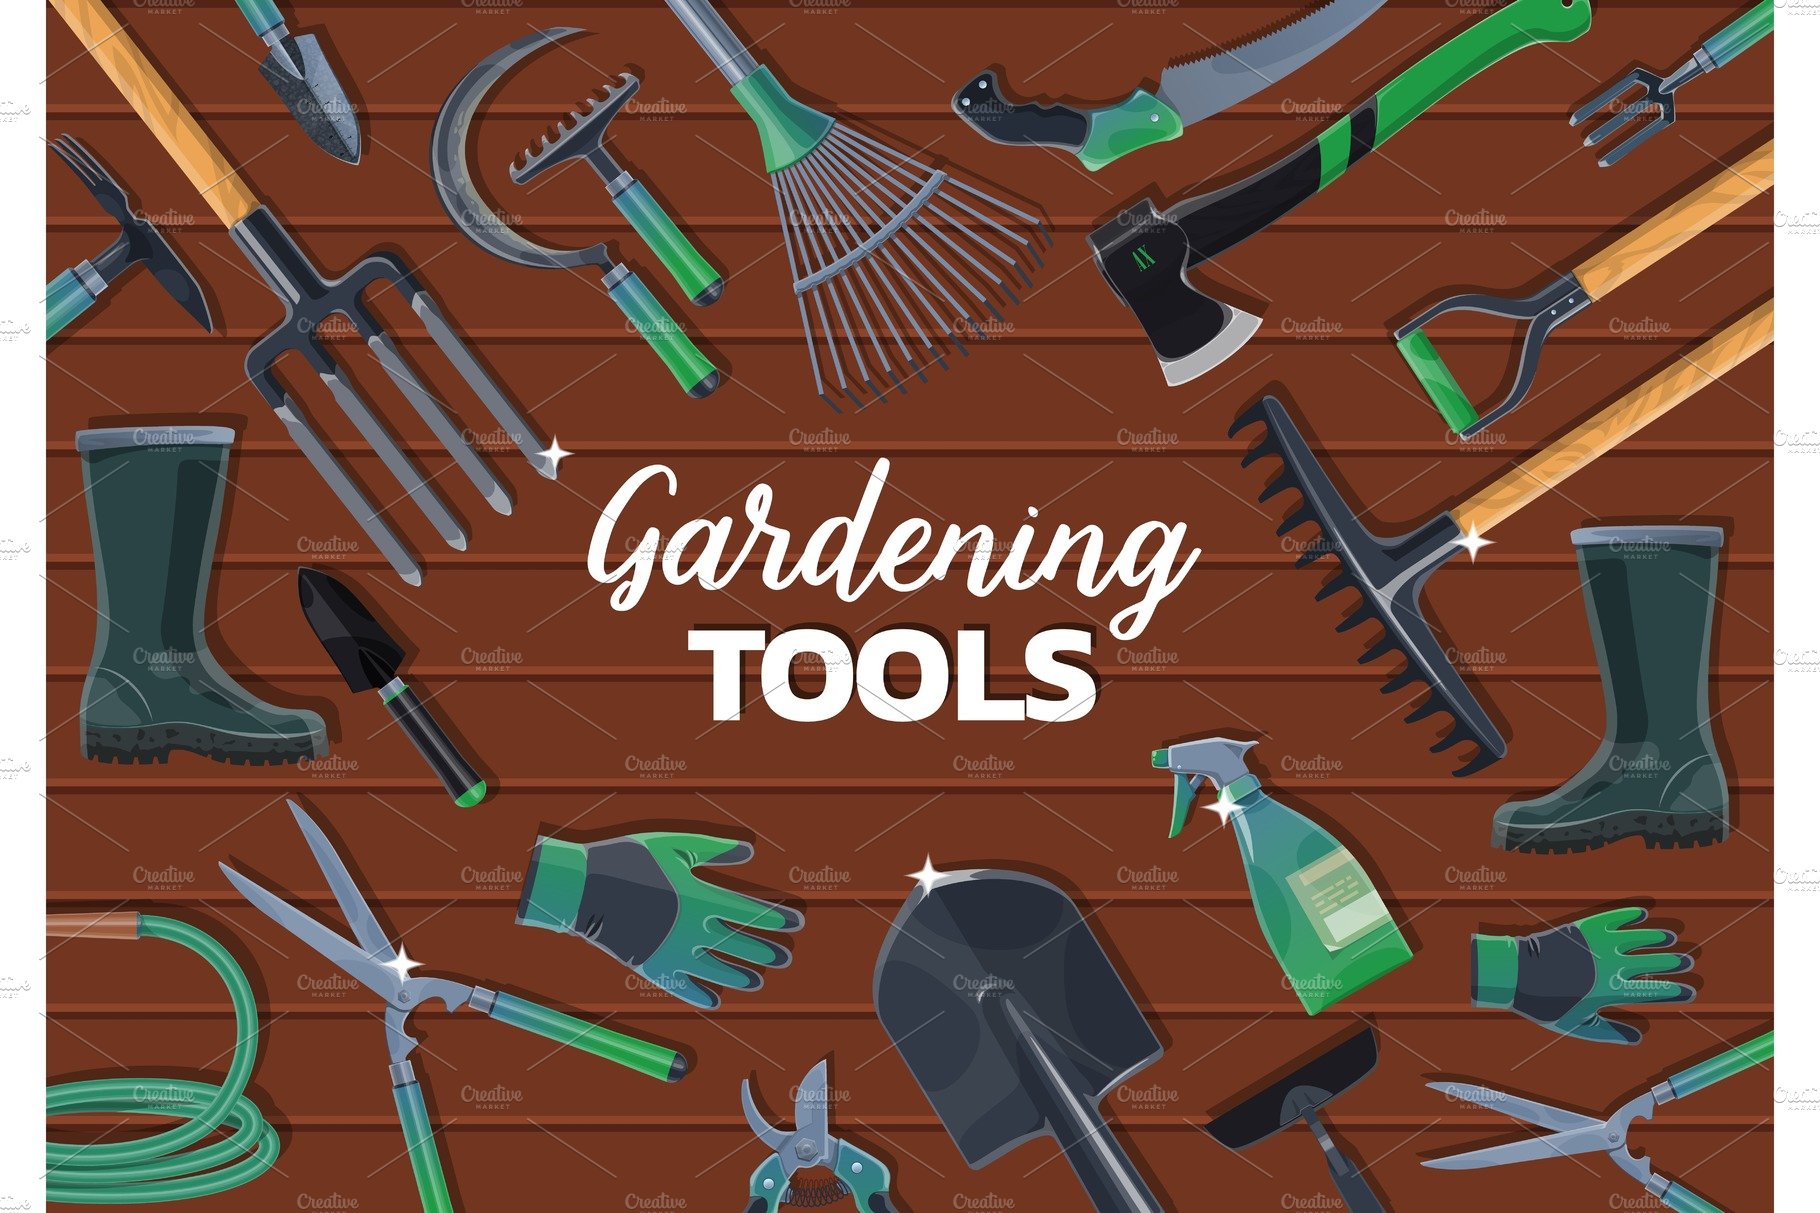 Spade, fork, rake gardening tools cover image.